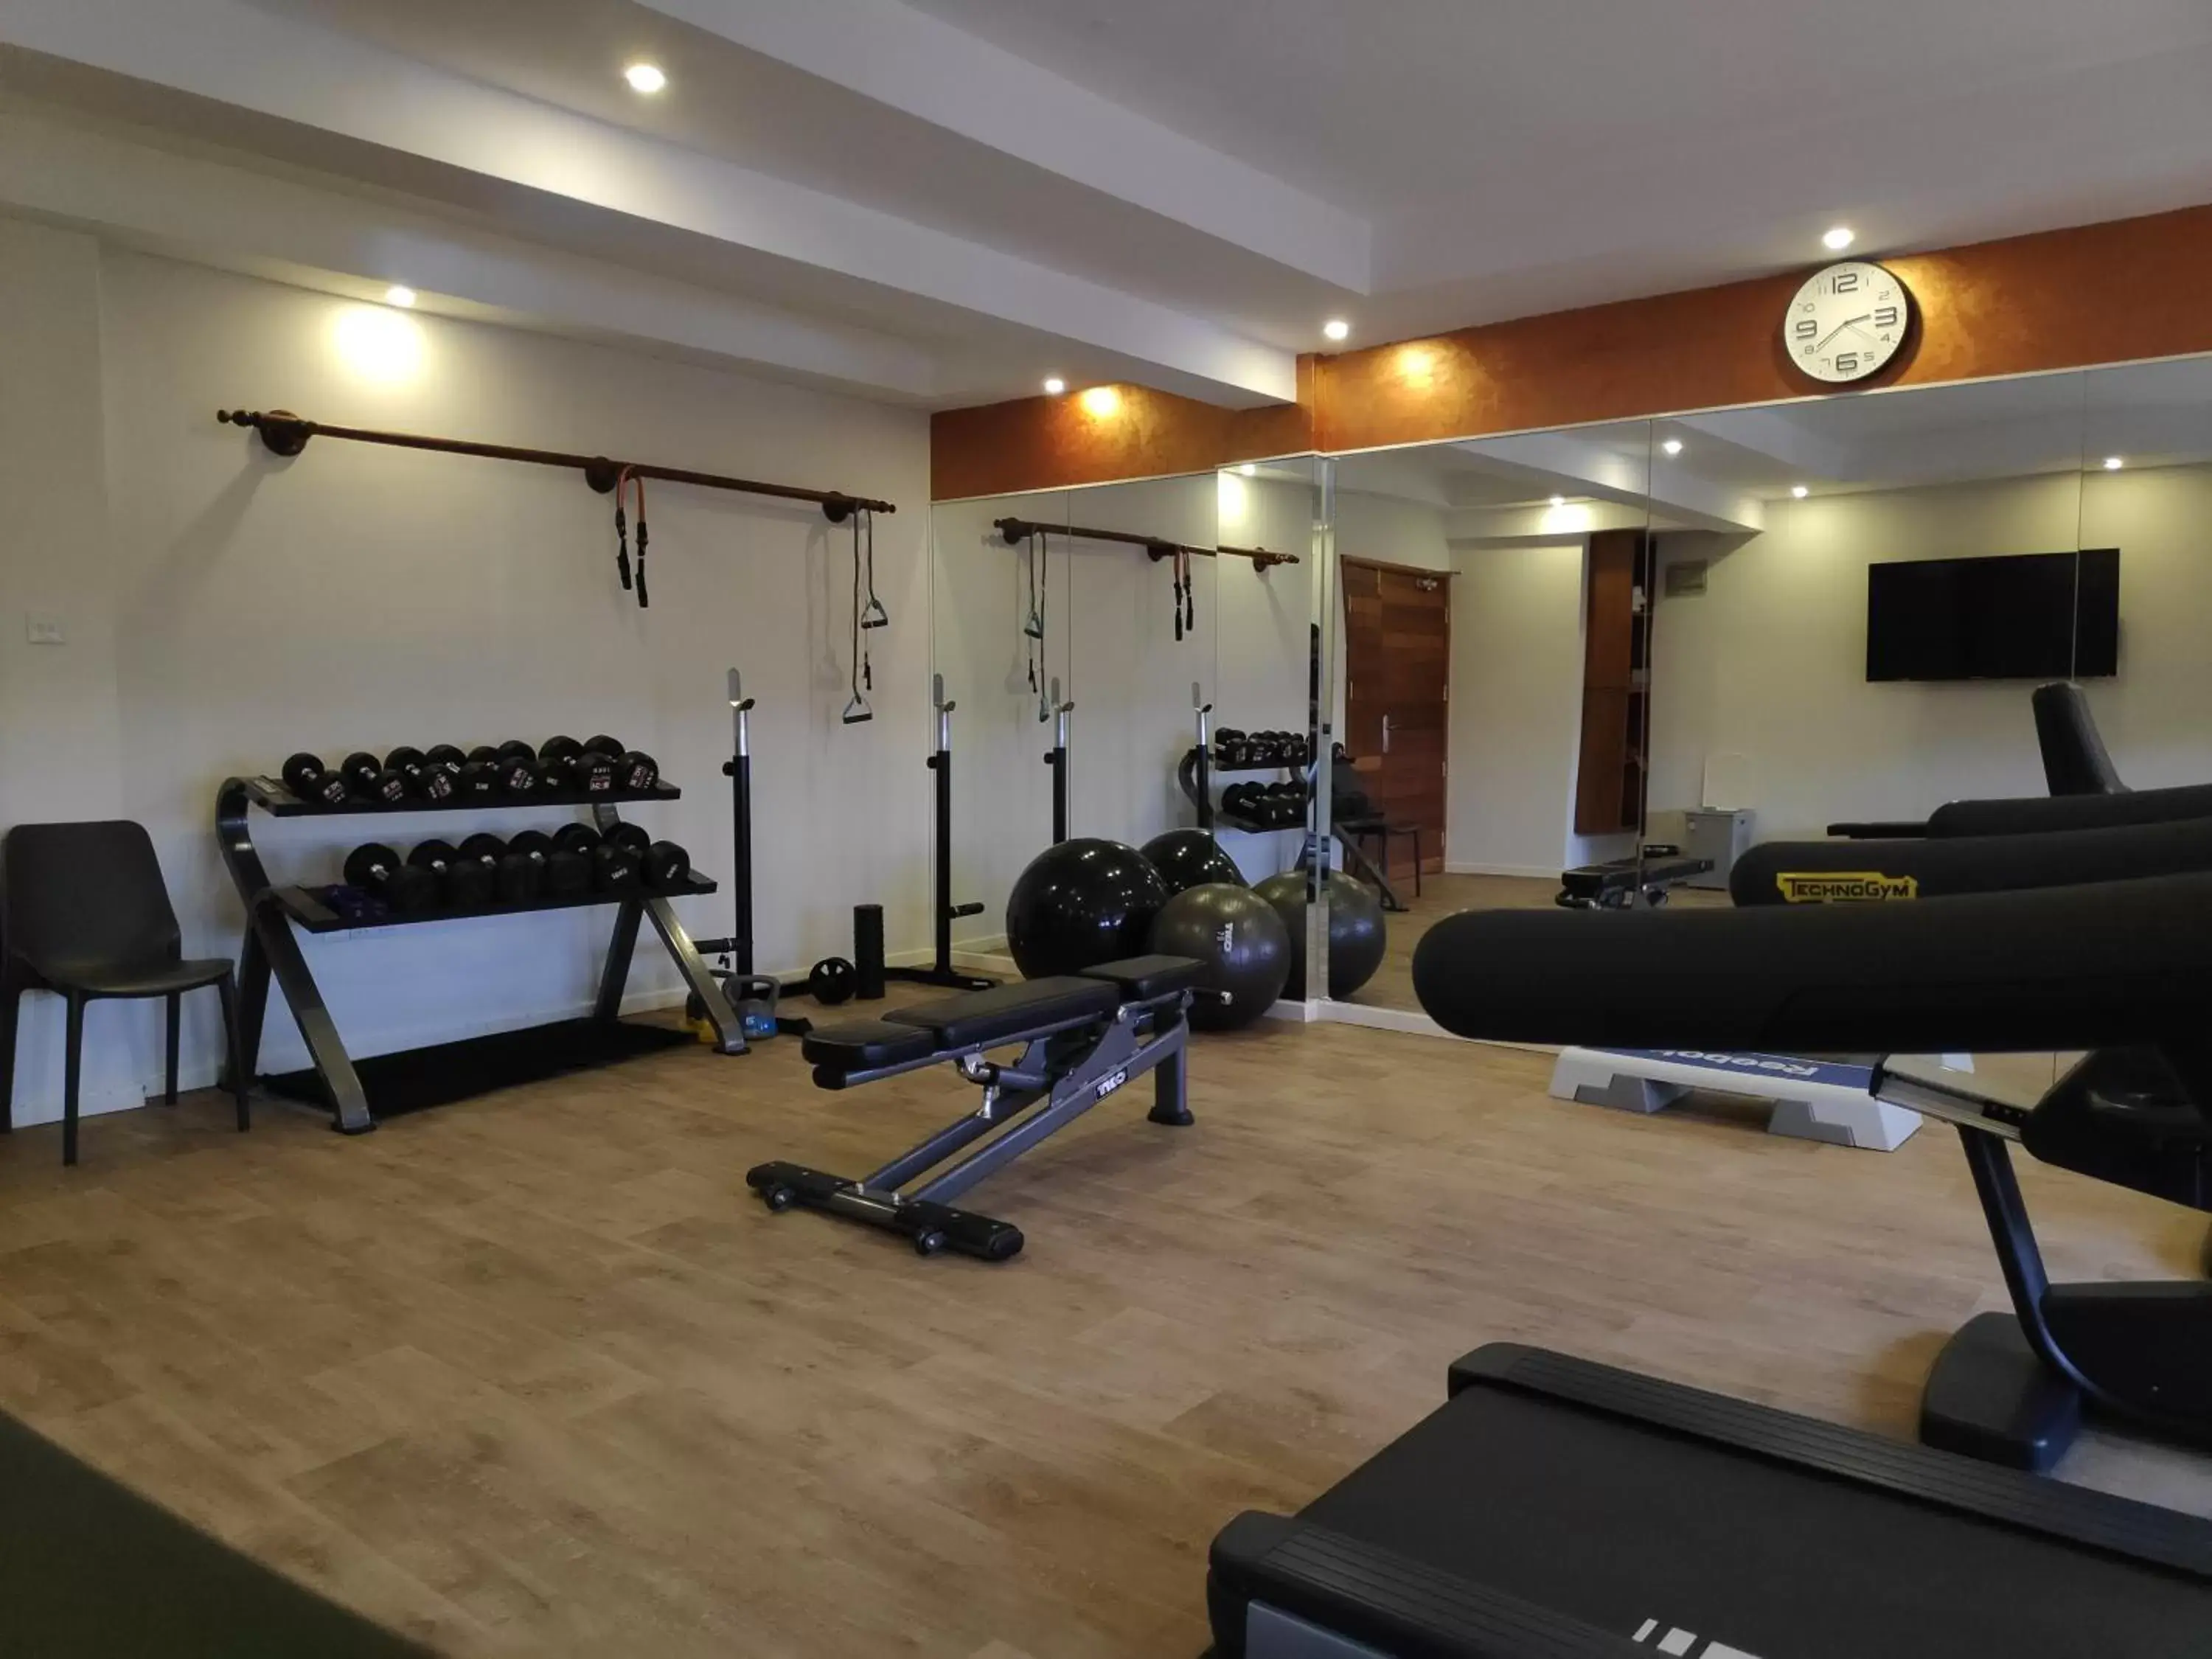 Fitness centre/facilities, Fitness Center/Facilities in Razana Hotel